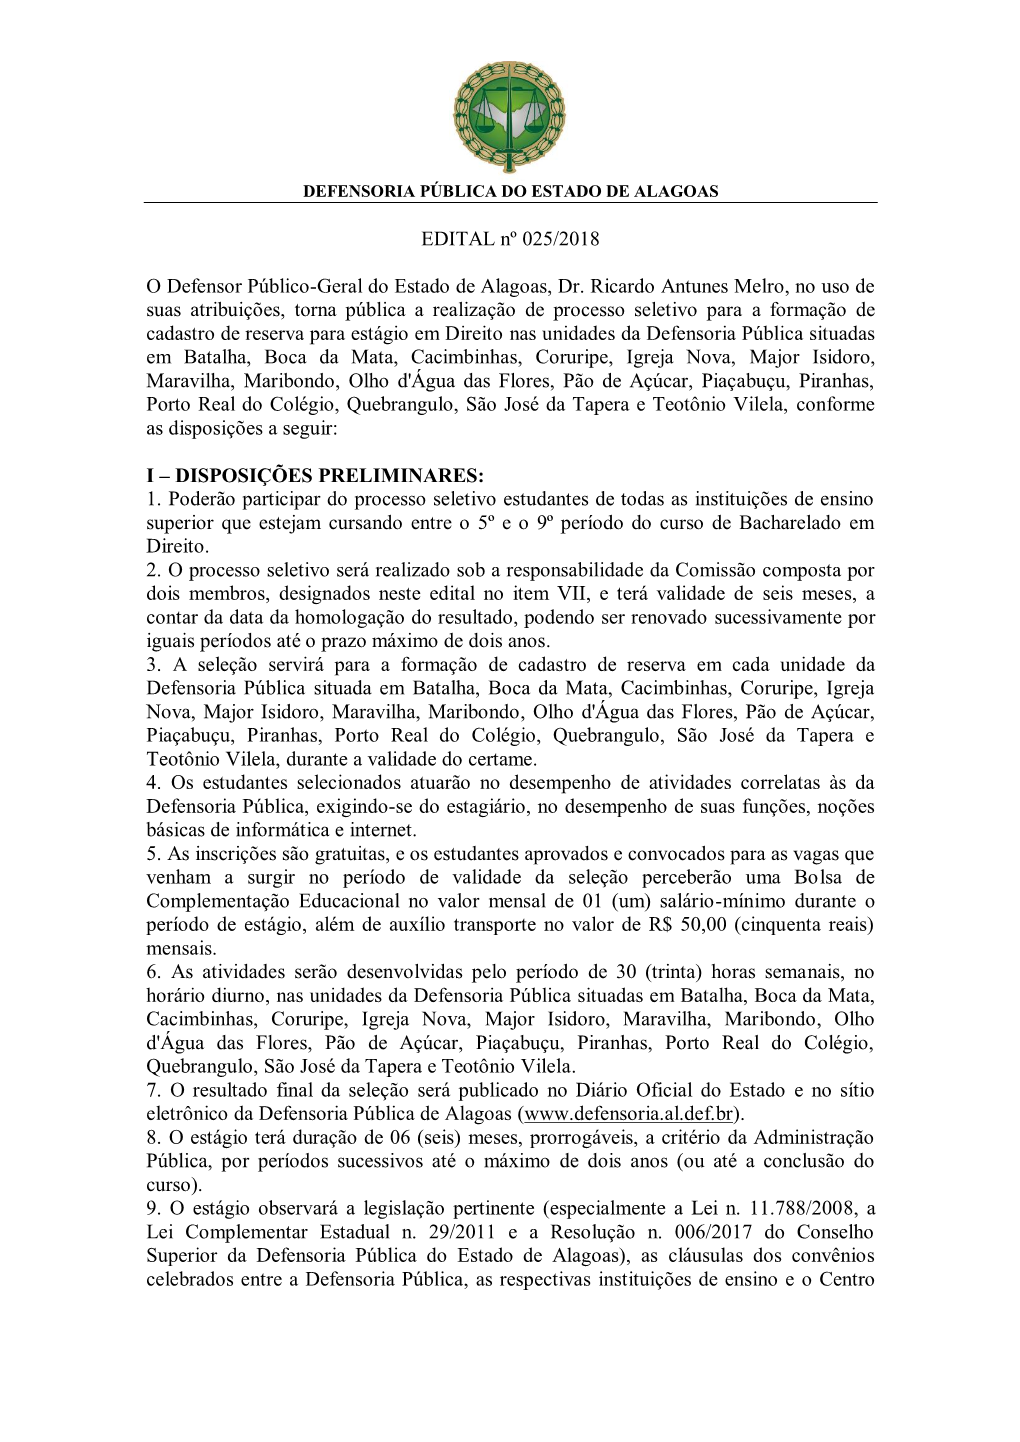 EDITAL Nº 025/2018 O Defensor Público-Geral Do Estado De Alagoas, Dr. Ricardo Antunes Melro, No Uso De Suas Atribuições, To